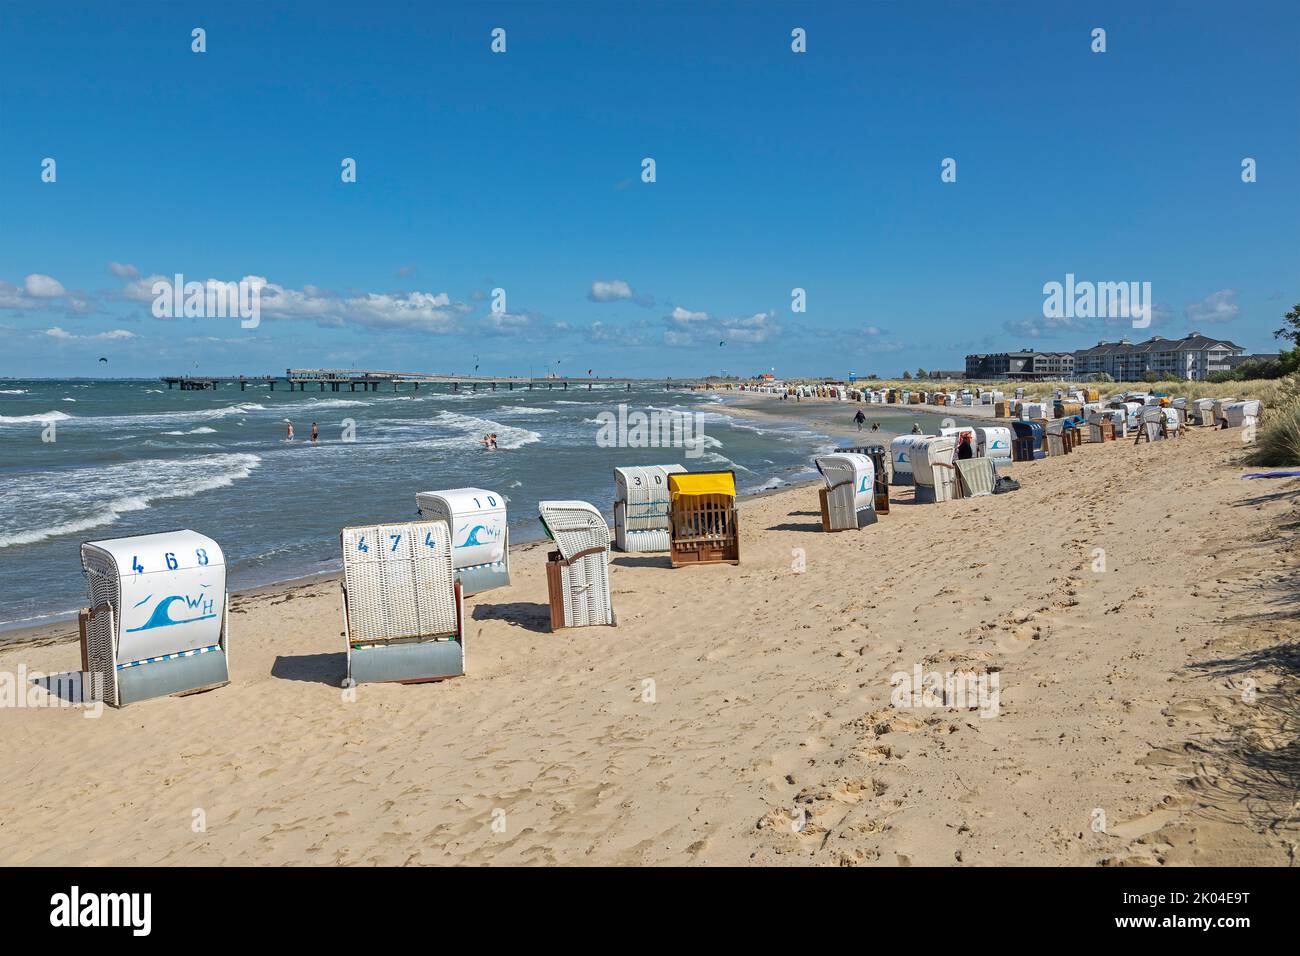 Pier, beach chairs, Steinwarder peninsula, Heiligenhafen, Schleswig-Holstein, Germany Stock Photo